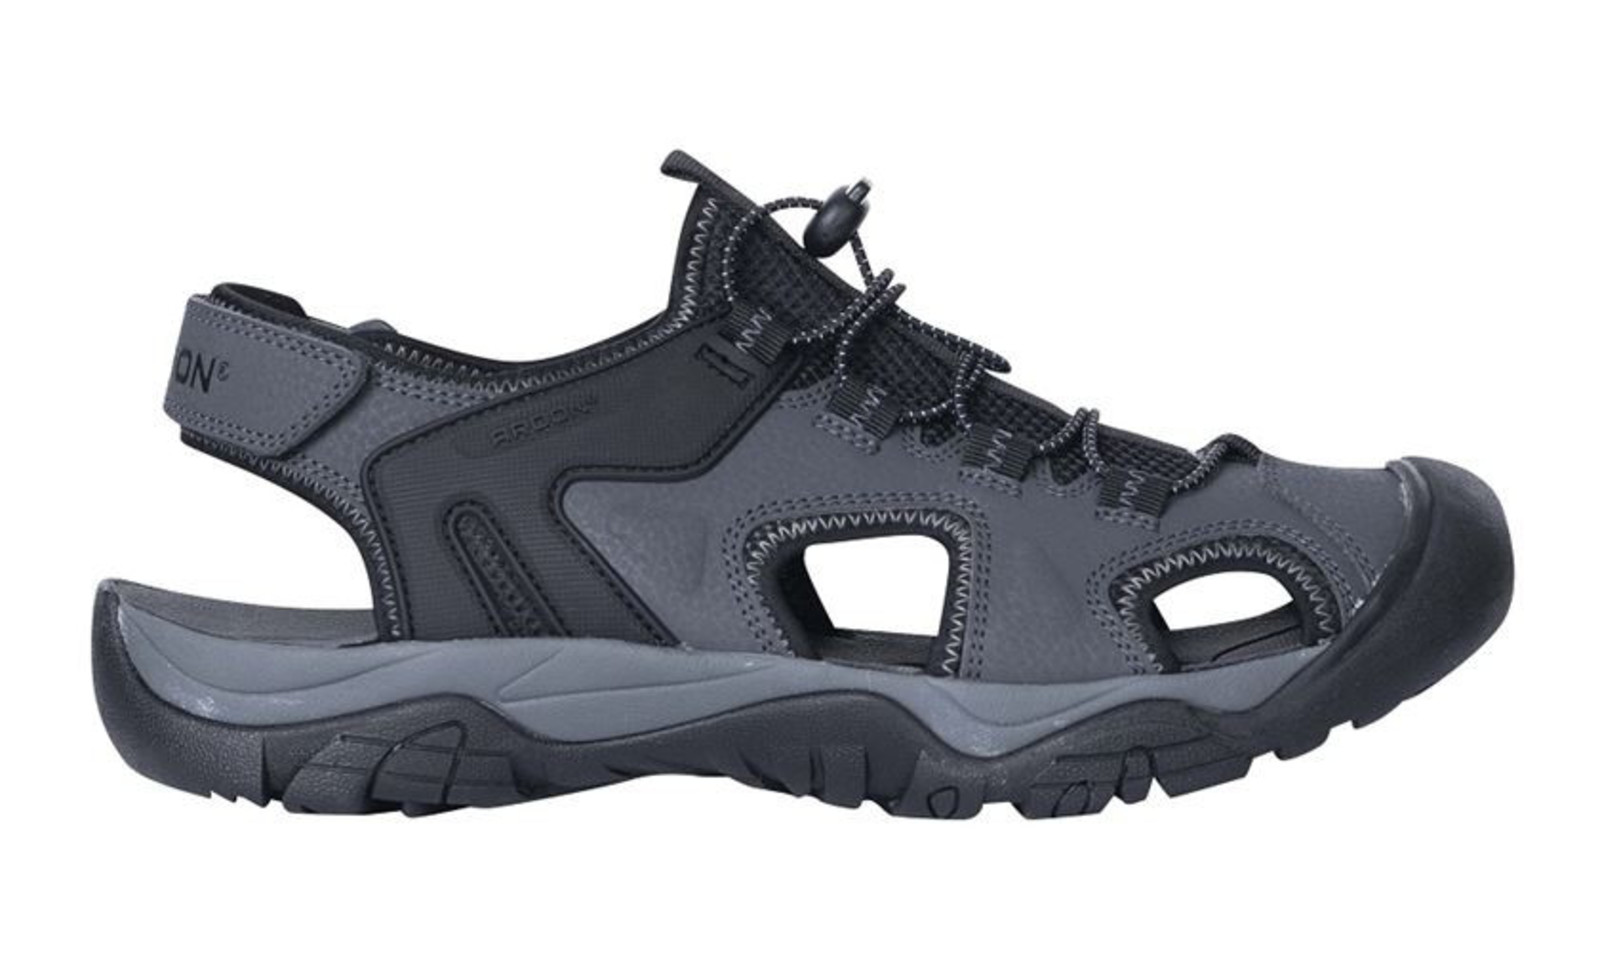 Trekové sandále Ardon Deon - veľkosť: 45, farba: sivá/čierna